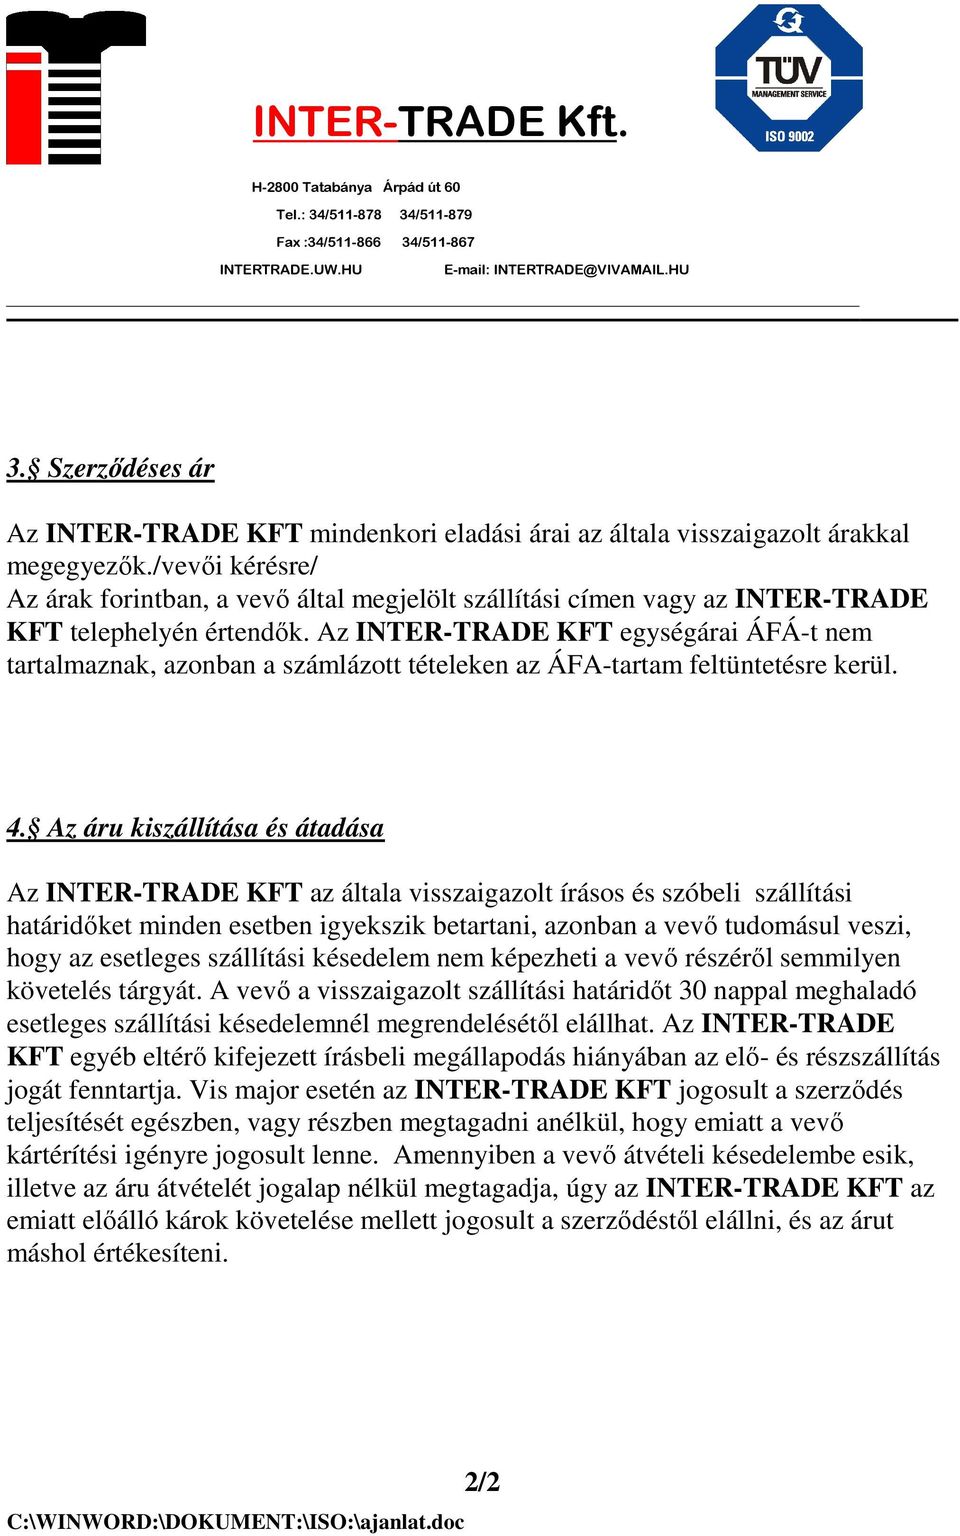 Az INTER-TRADE KFT egységárai ÁFÁ-t nem tartalmaznak, azonban a számlázott tételeken az ÁFA-tartam feltüntetésre kerül. 4.